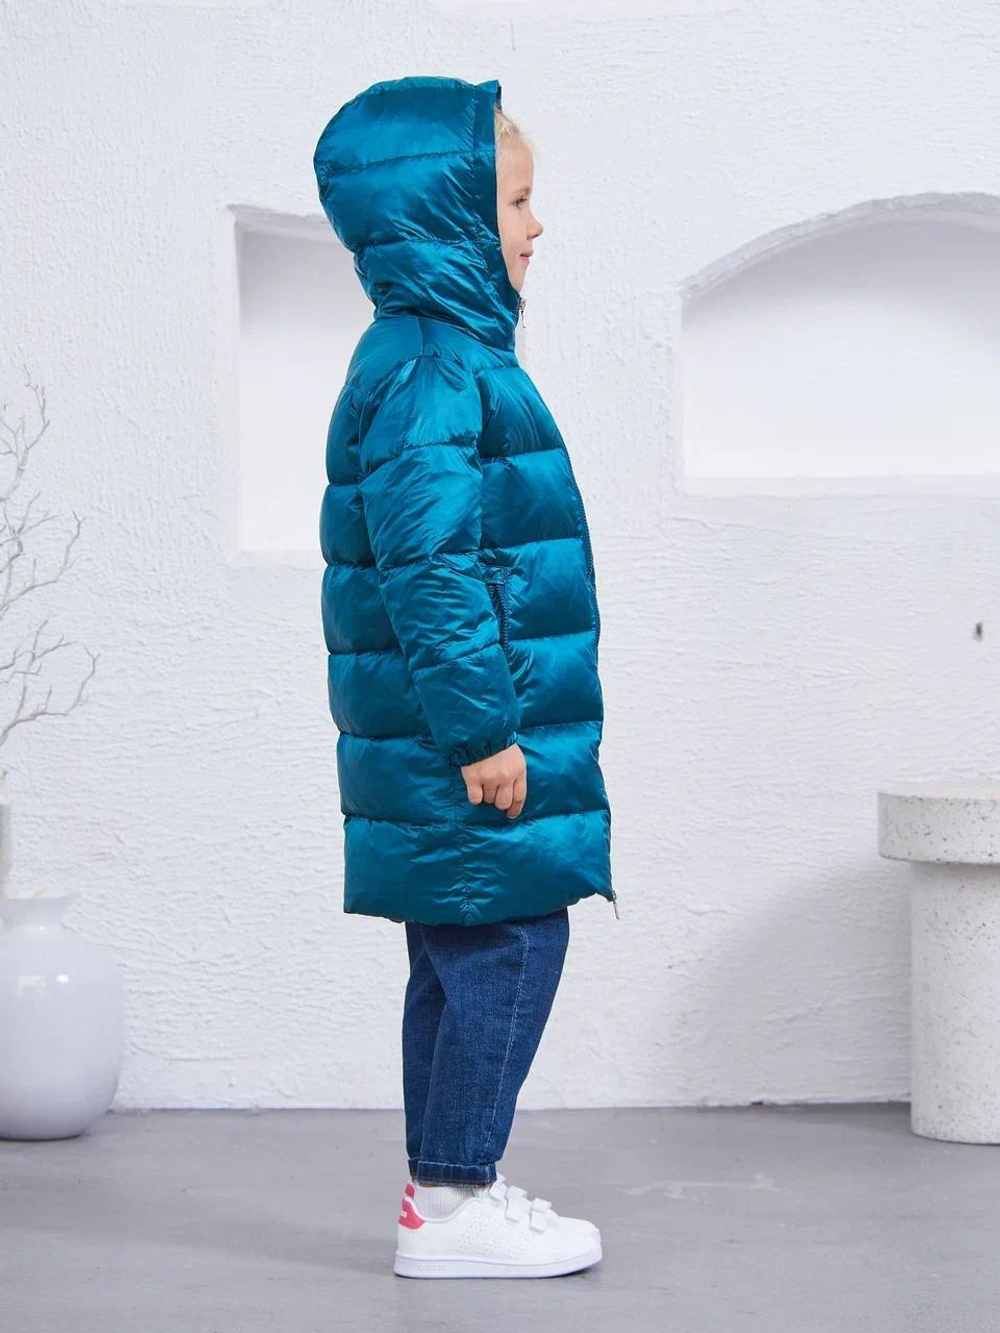 Детское пальто для девочки Buba Light Blue